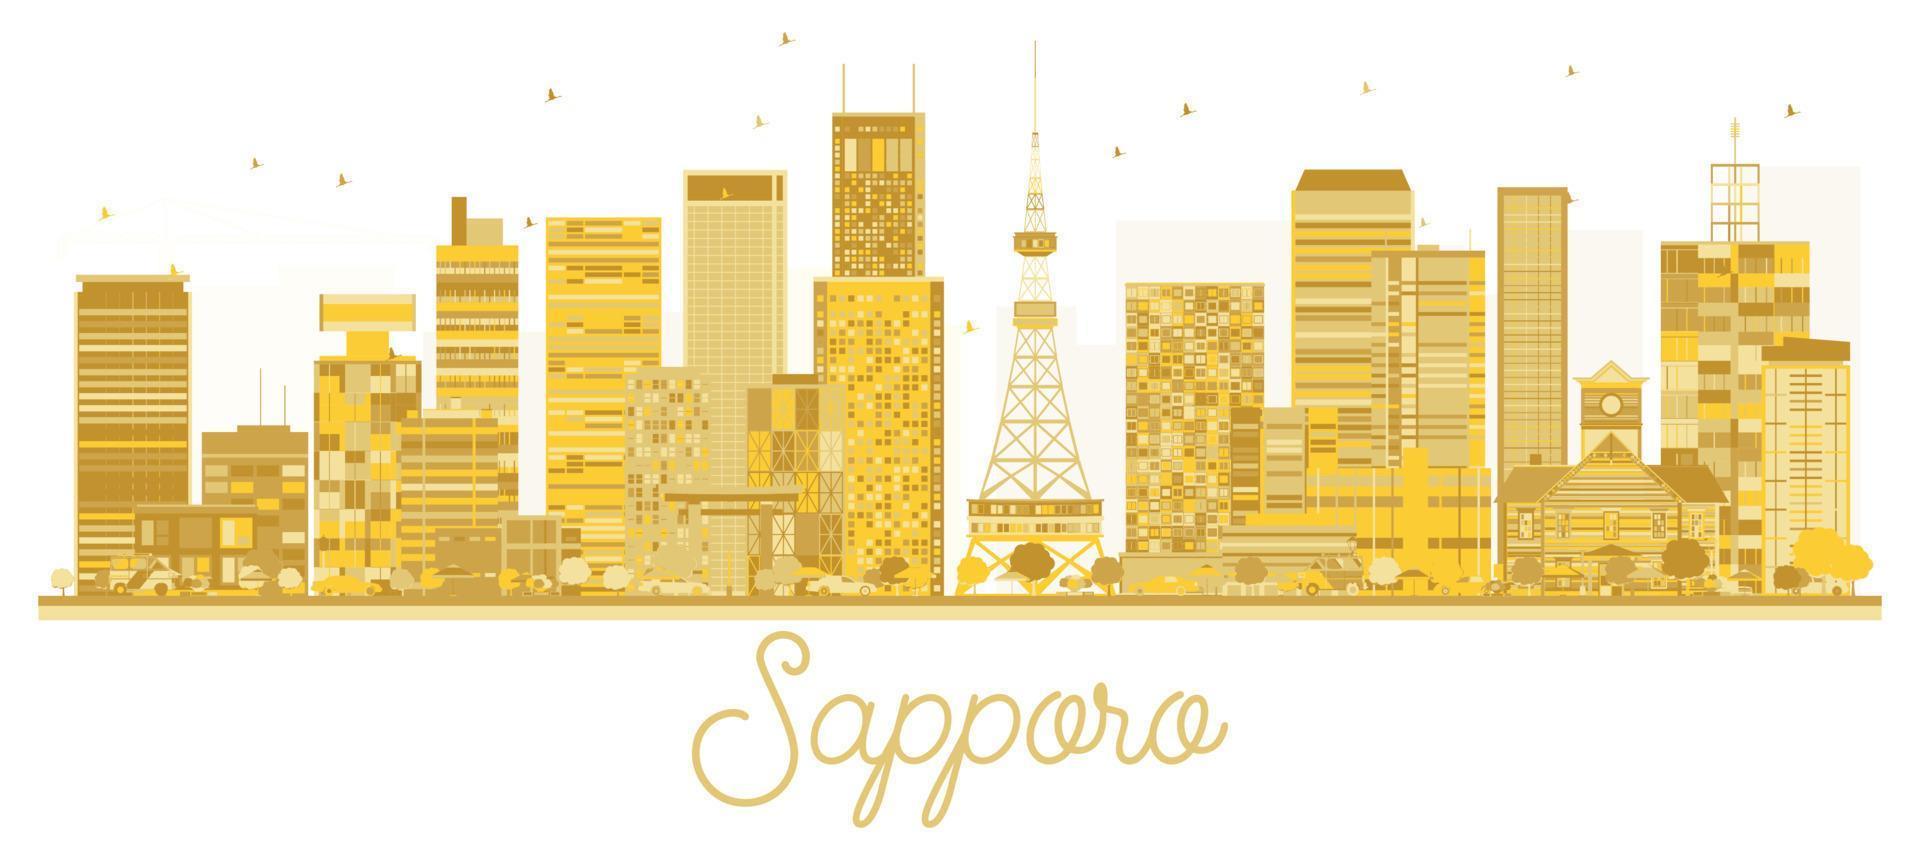 silhueta dourada do skyline da cidade de sapporo japão. vetor